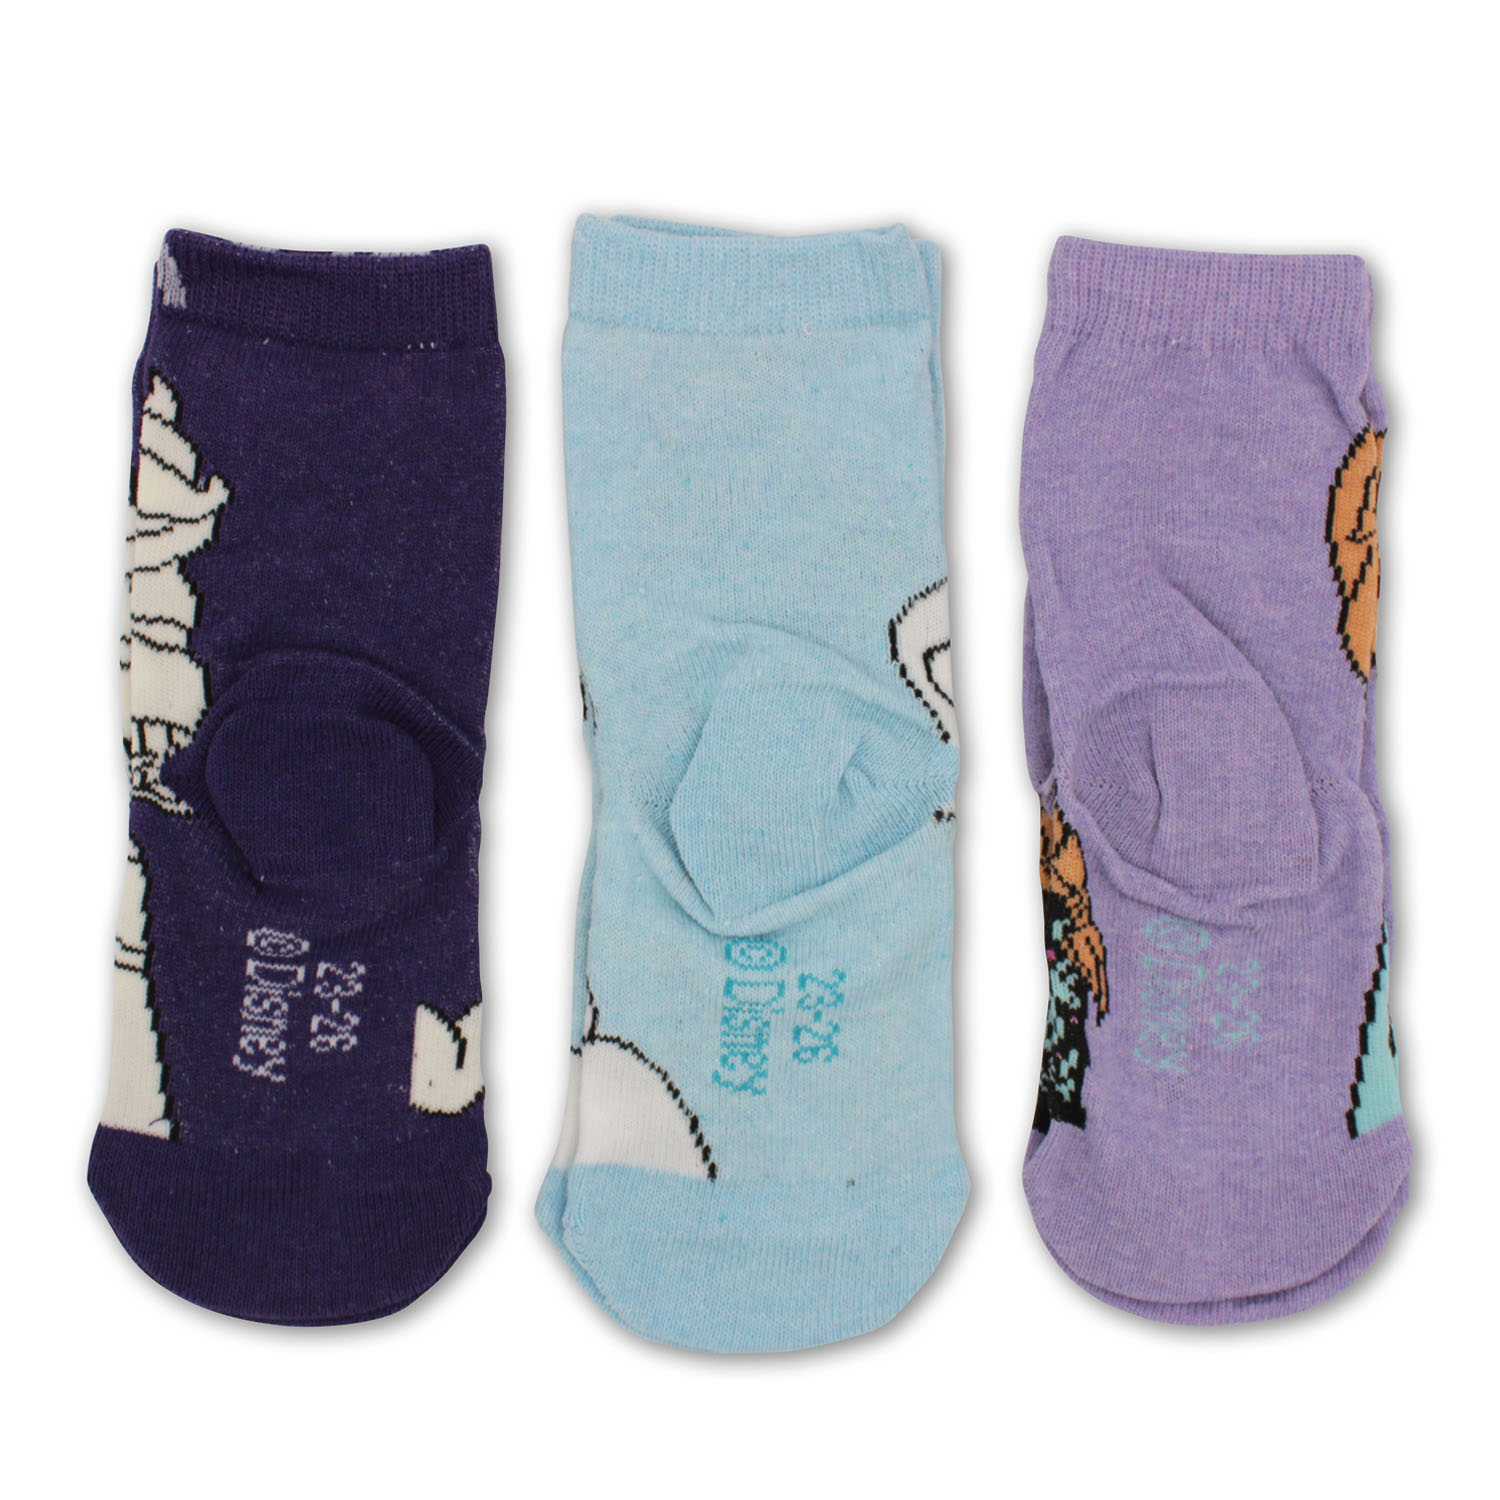 Pack de 3 calcetines FROZEN para niñas de Ana y Elsa